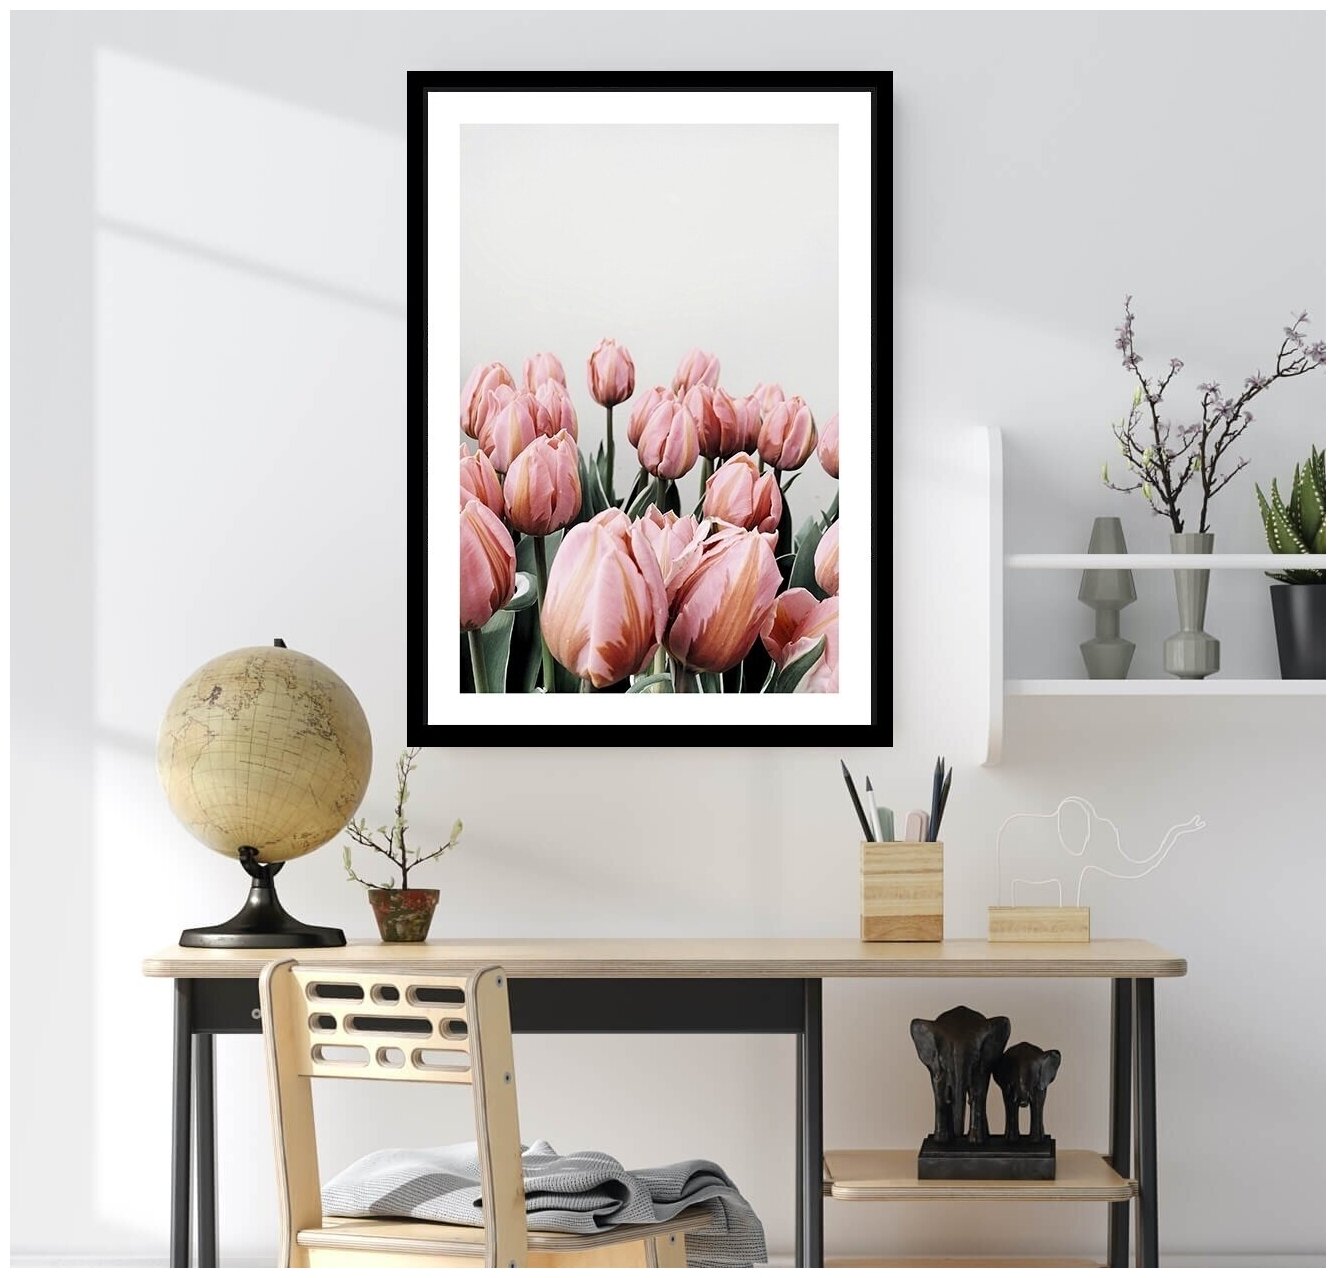 Постер В рамке "Розовые тюльпаны" 40 на 50 (черная рама) / Картина для интерьера / Плакат / Постер на стену / Интерьерные картины